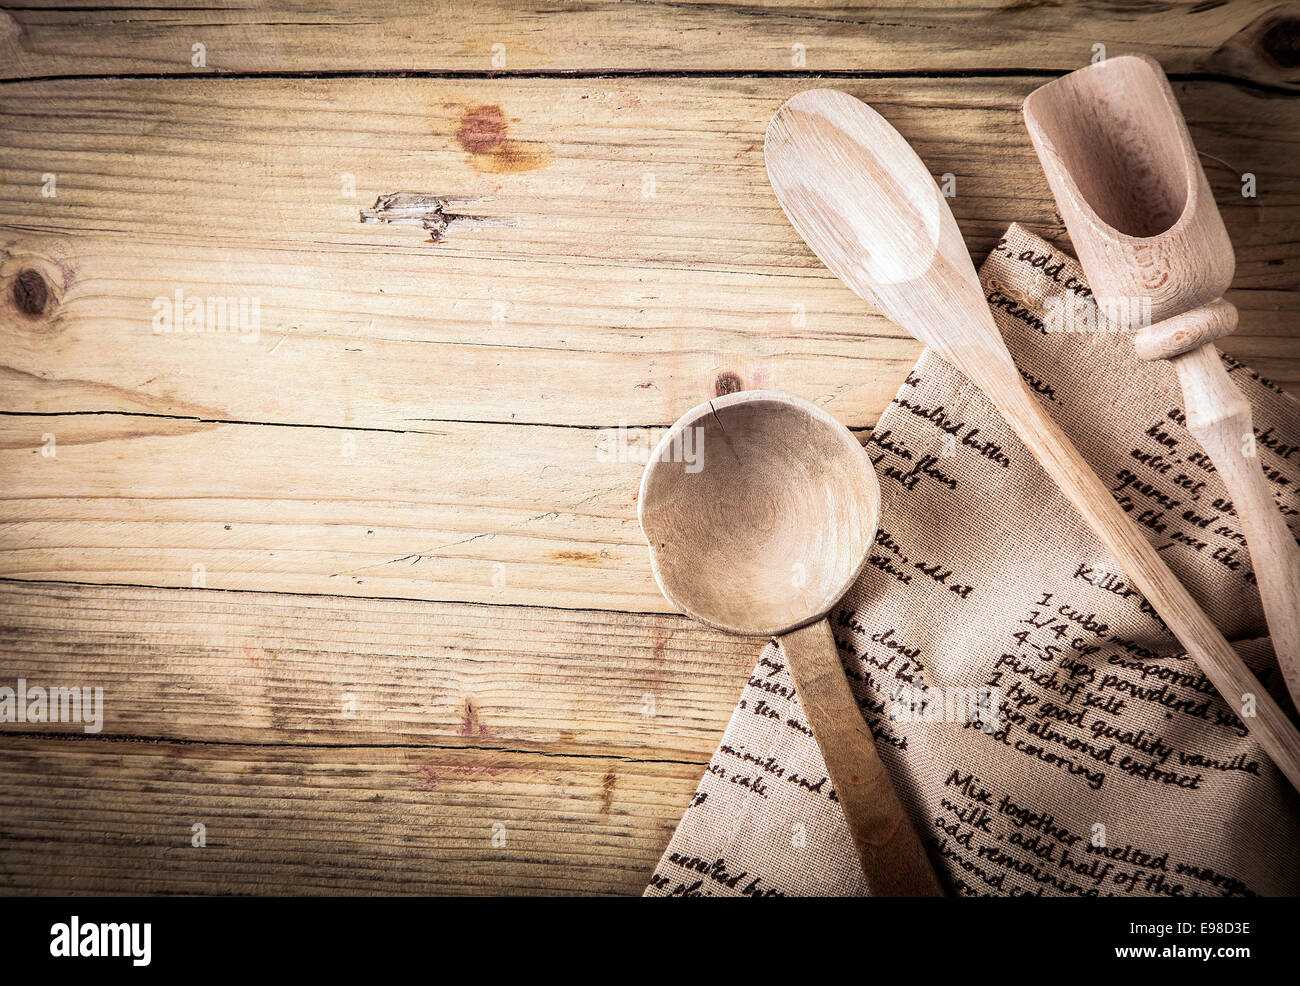 Rustikale Kochutensilien mit einem Holzlöffel, Kelle und Schaufel mit einem Rezept auf es auf einem alten gebrochenen Holztisch mit Vignettierung und Exemplar auf einem gefalteten Tuch liegend Stockfoto